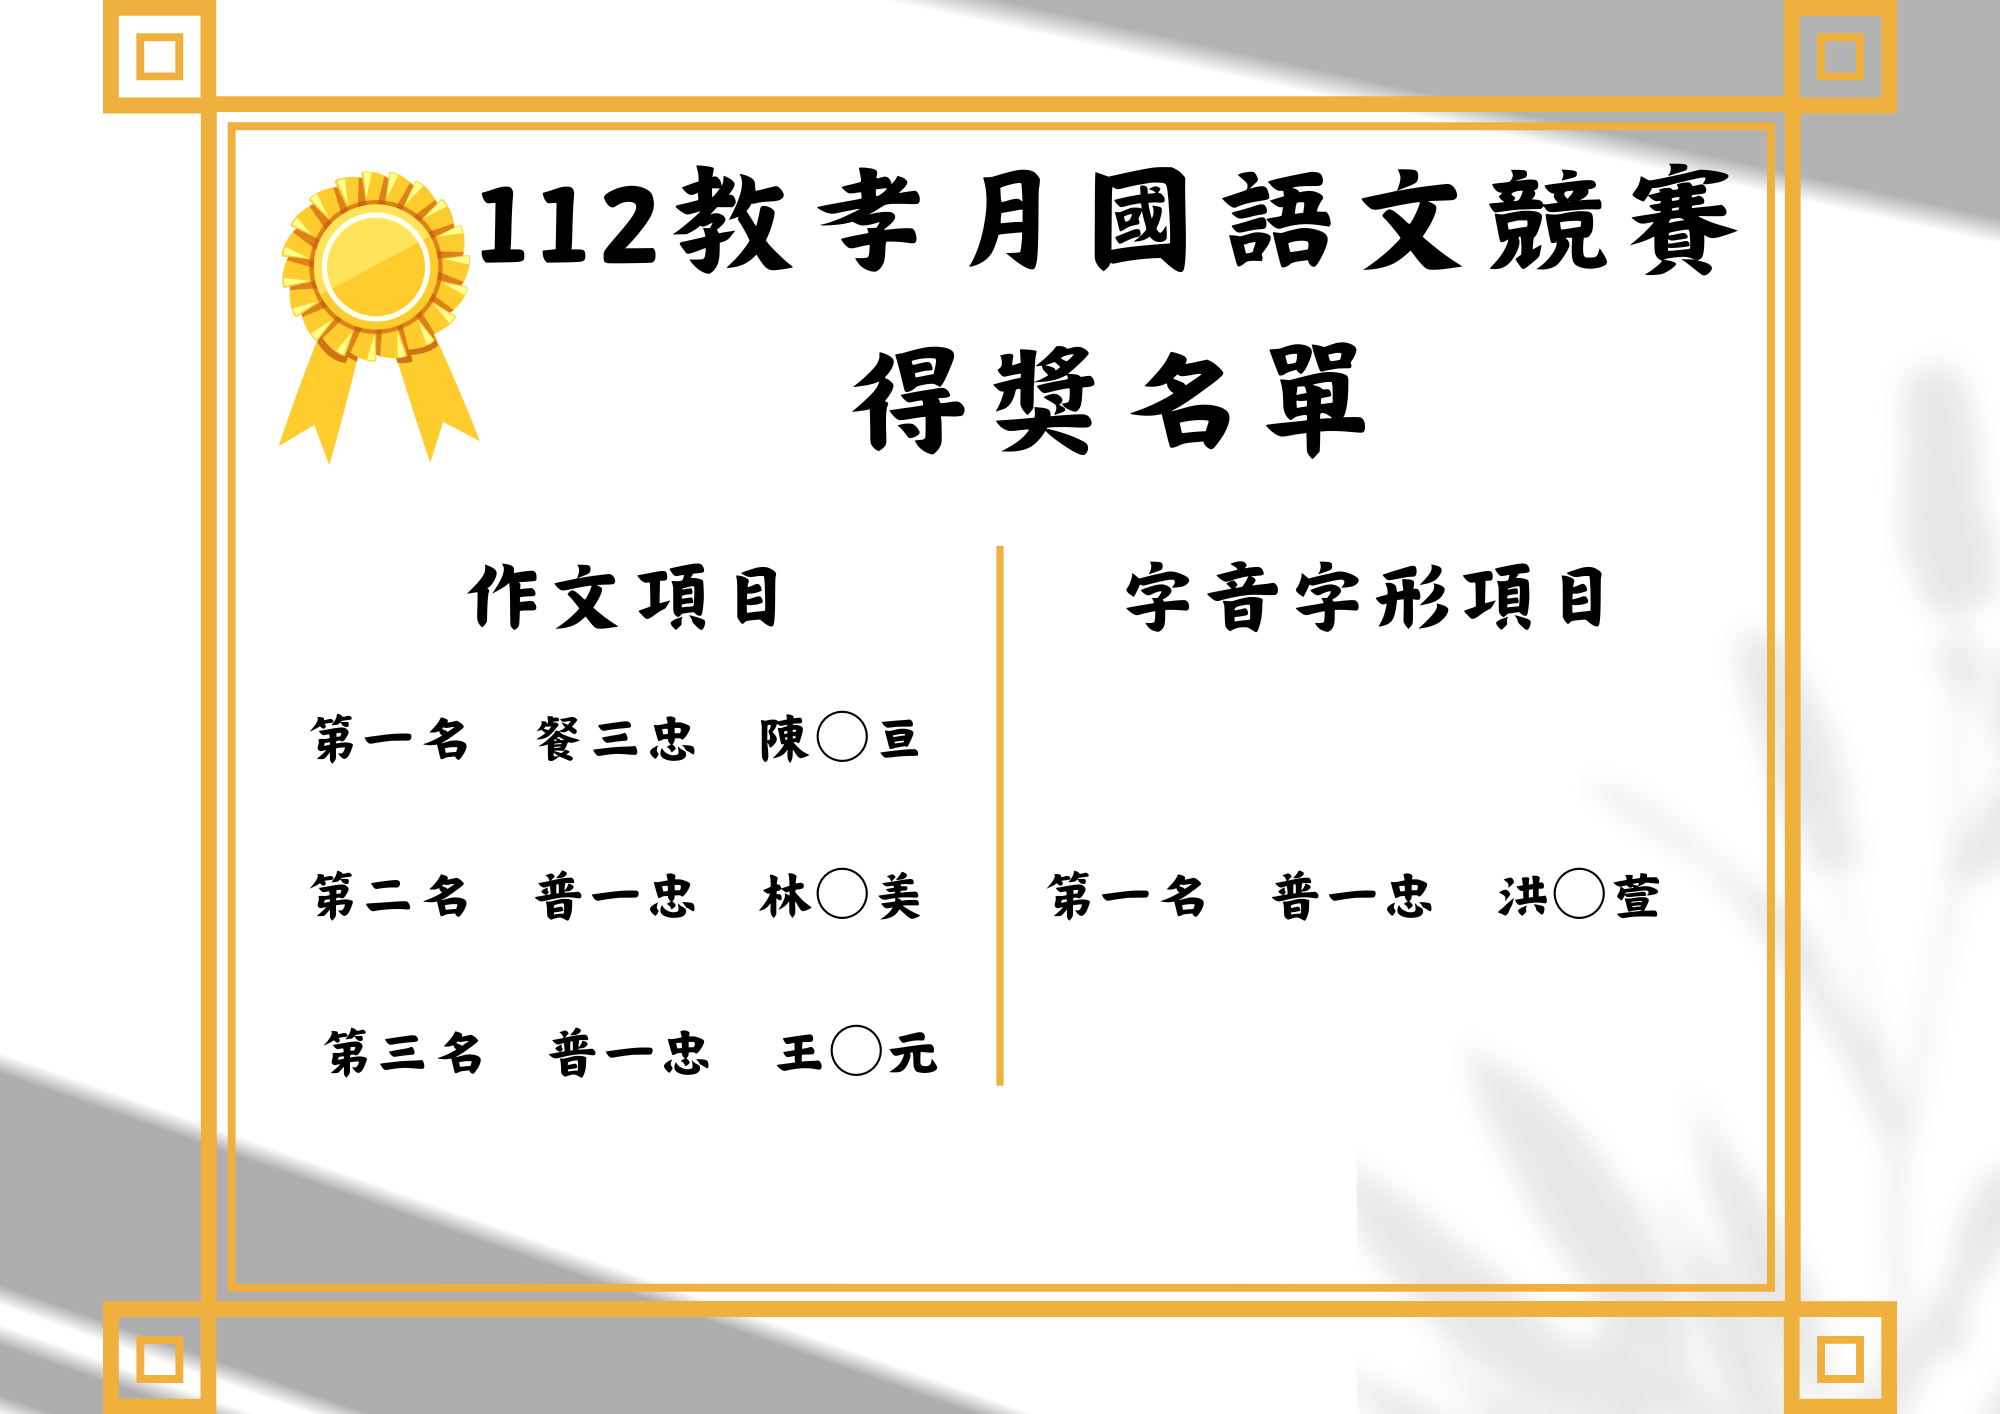 112-2國語文競賽得獎名單